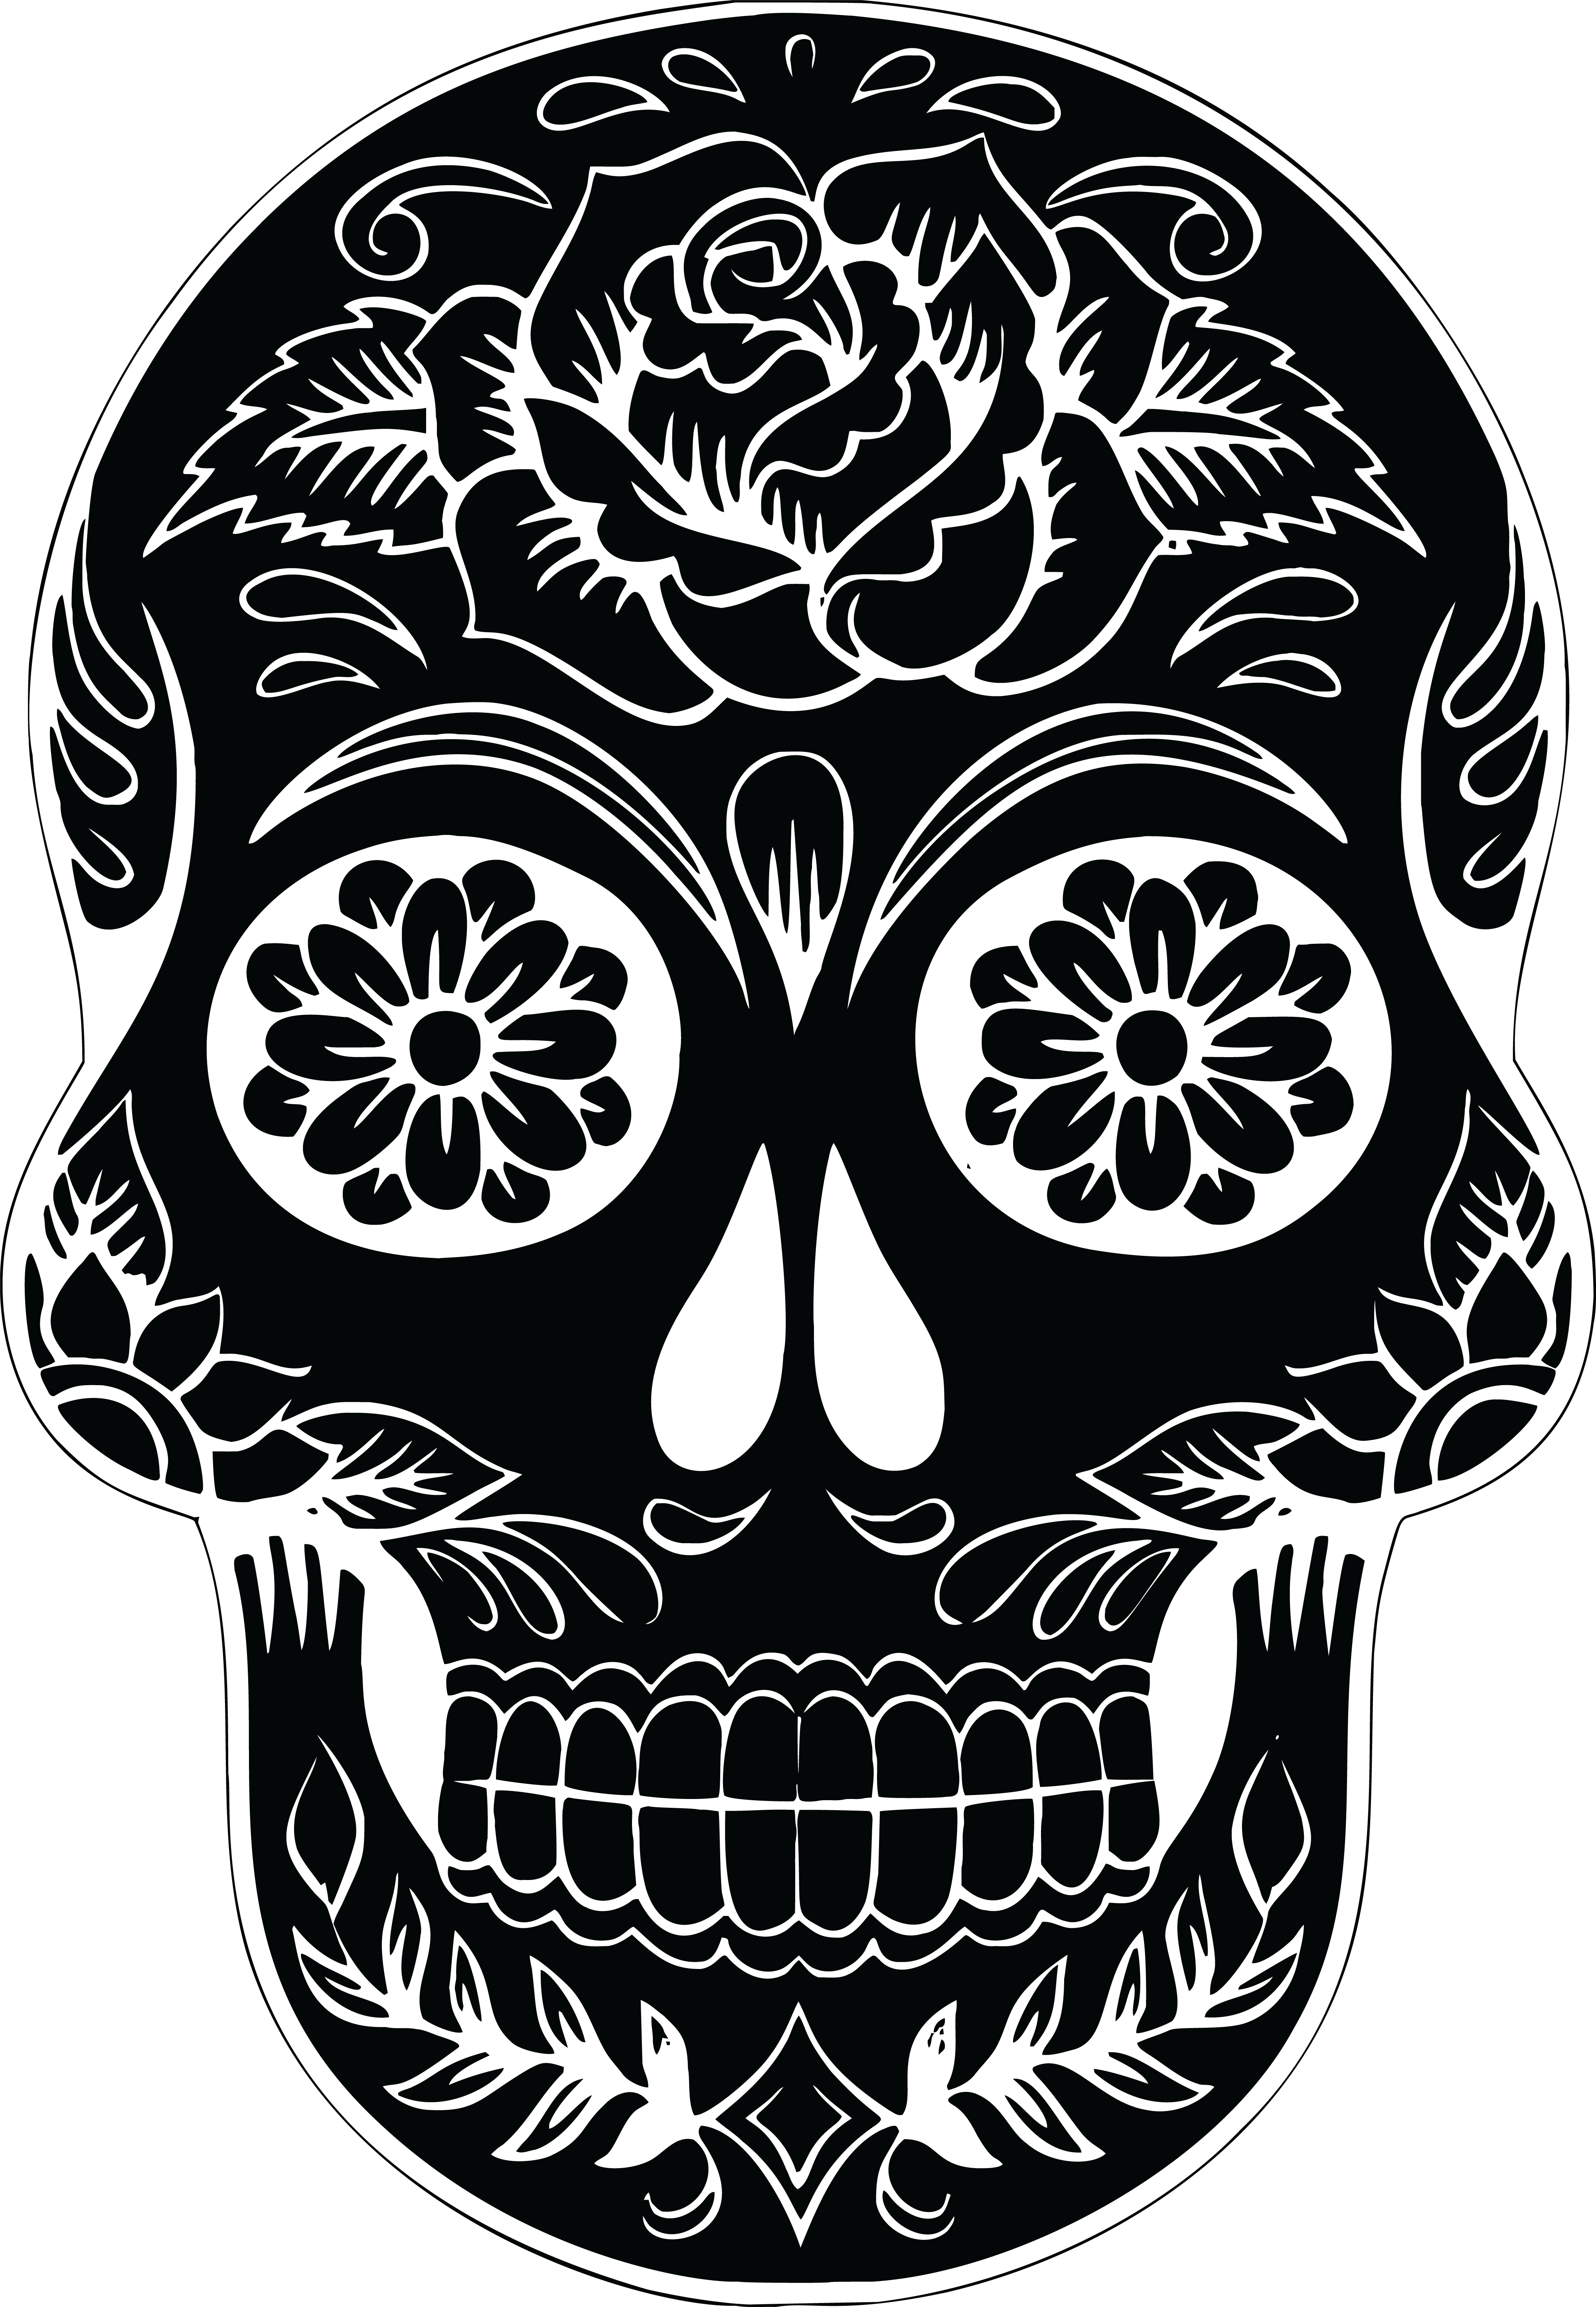 Calavera Skull Silhouette Clip art